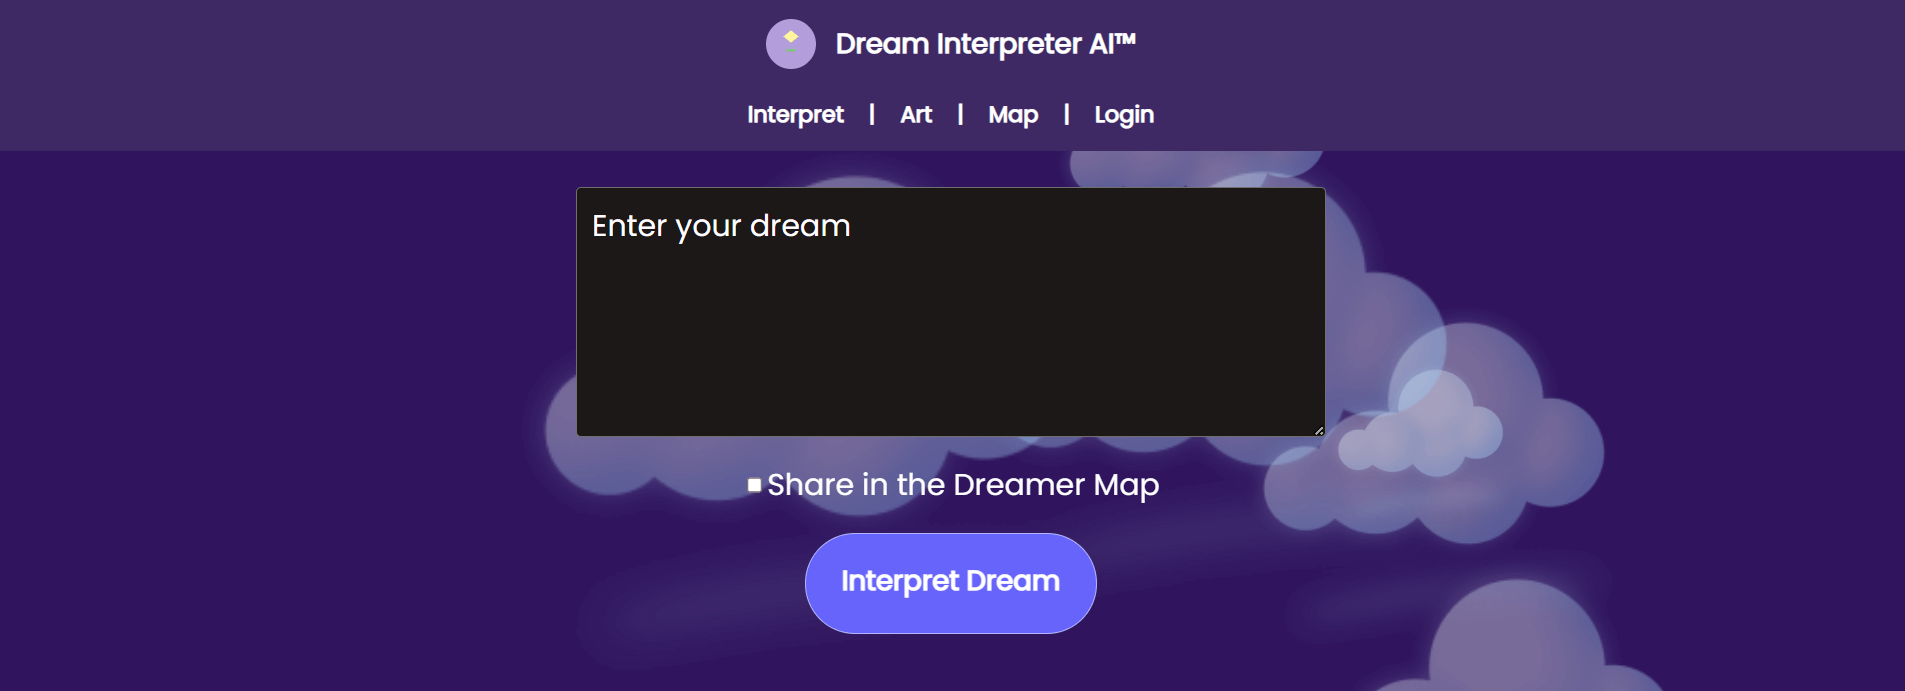 Dream Interpreter AI